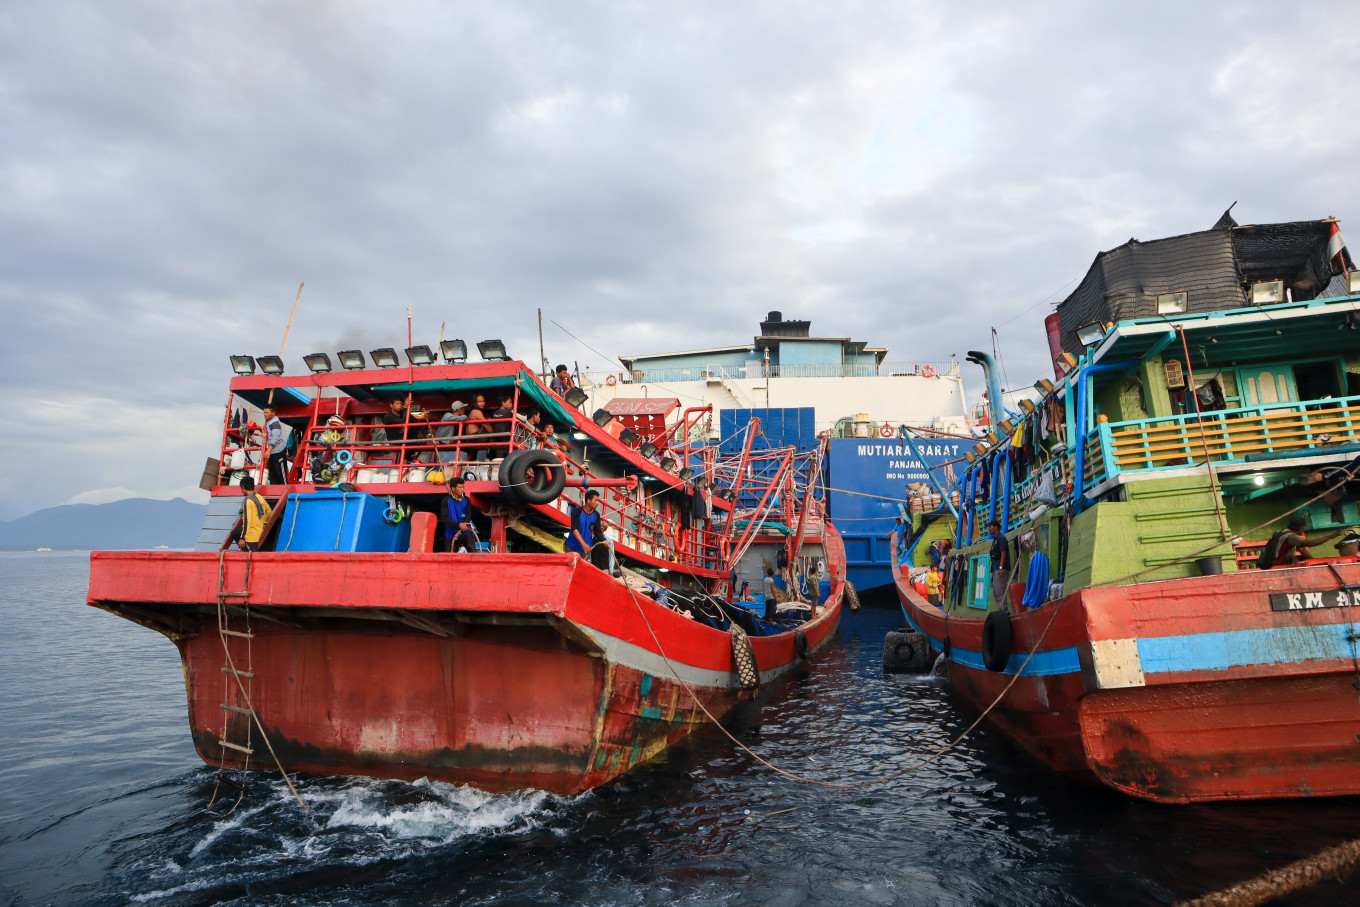 Penangkapan ikan berlebihan muncul saat Indonesia berjuang untuk memenuhi target perikanannya: sebuah studi berbasis masyarakat